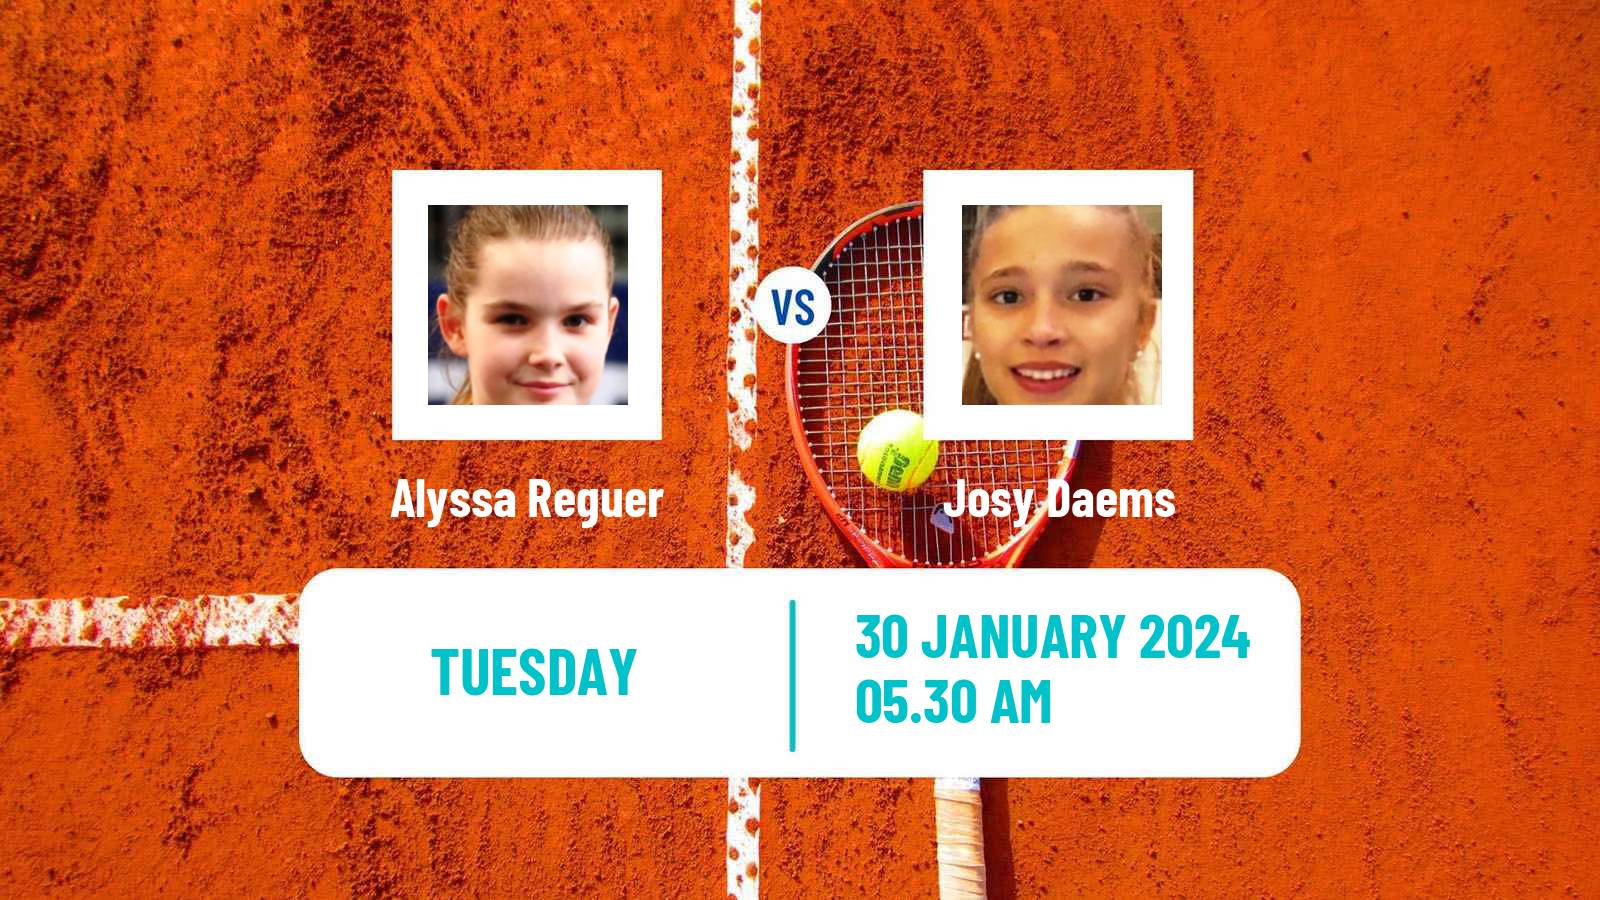 Tennis ITF W15 Monastir 3 Women Alyssa Reguer - Josy Daems